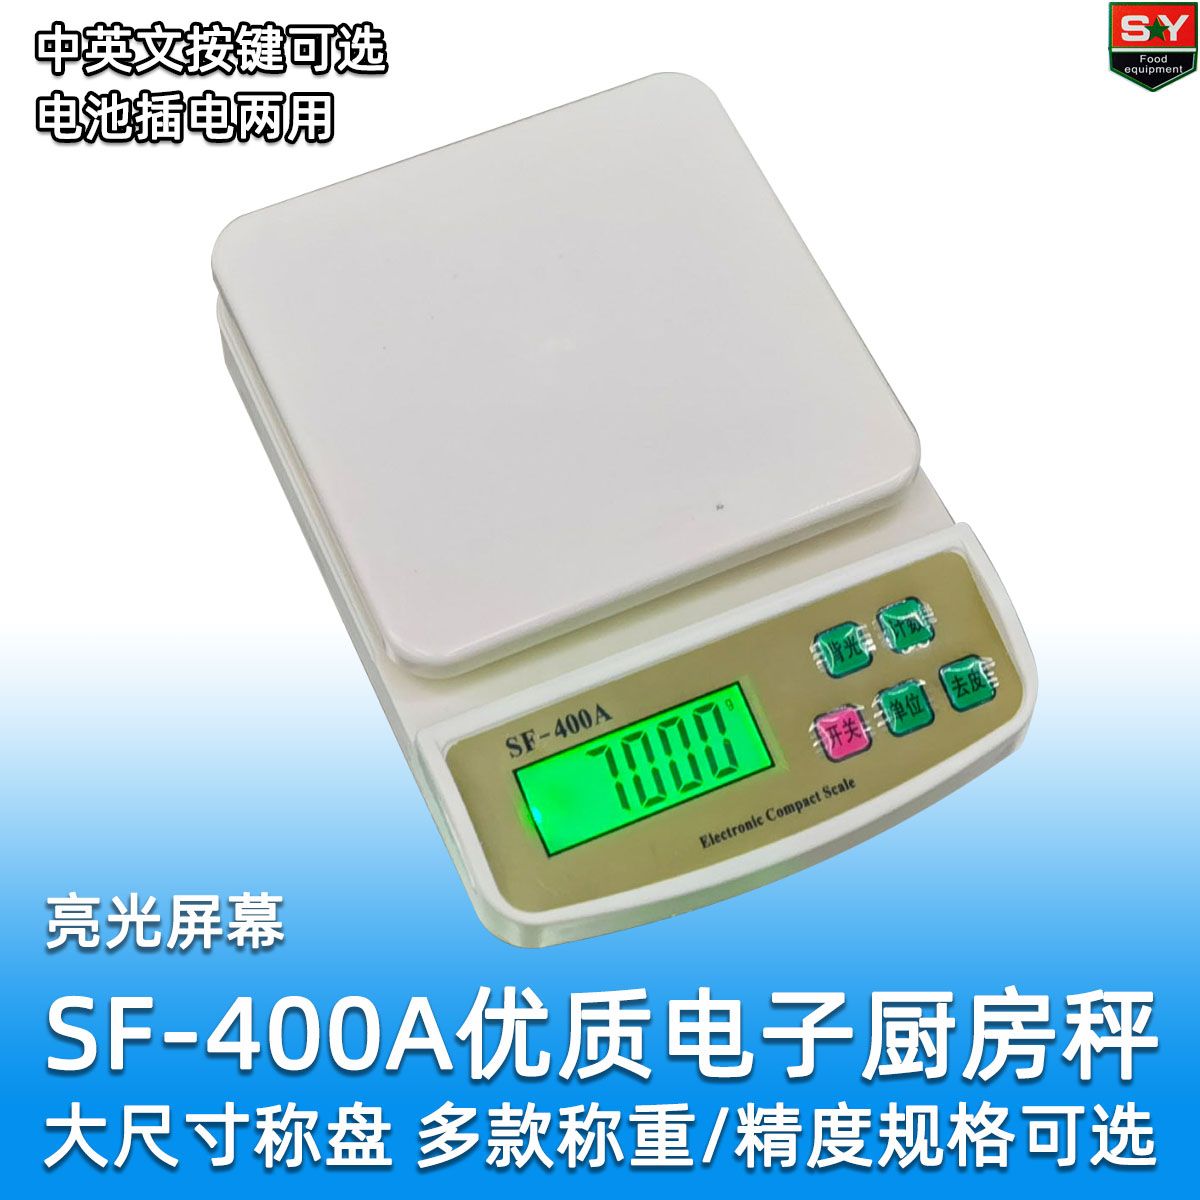 SF-400A小厨房称 高精确度烘焙称 10kg精准厨房秤英文按键外贸品详情图1